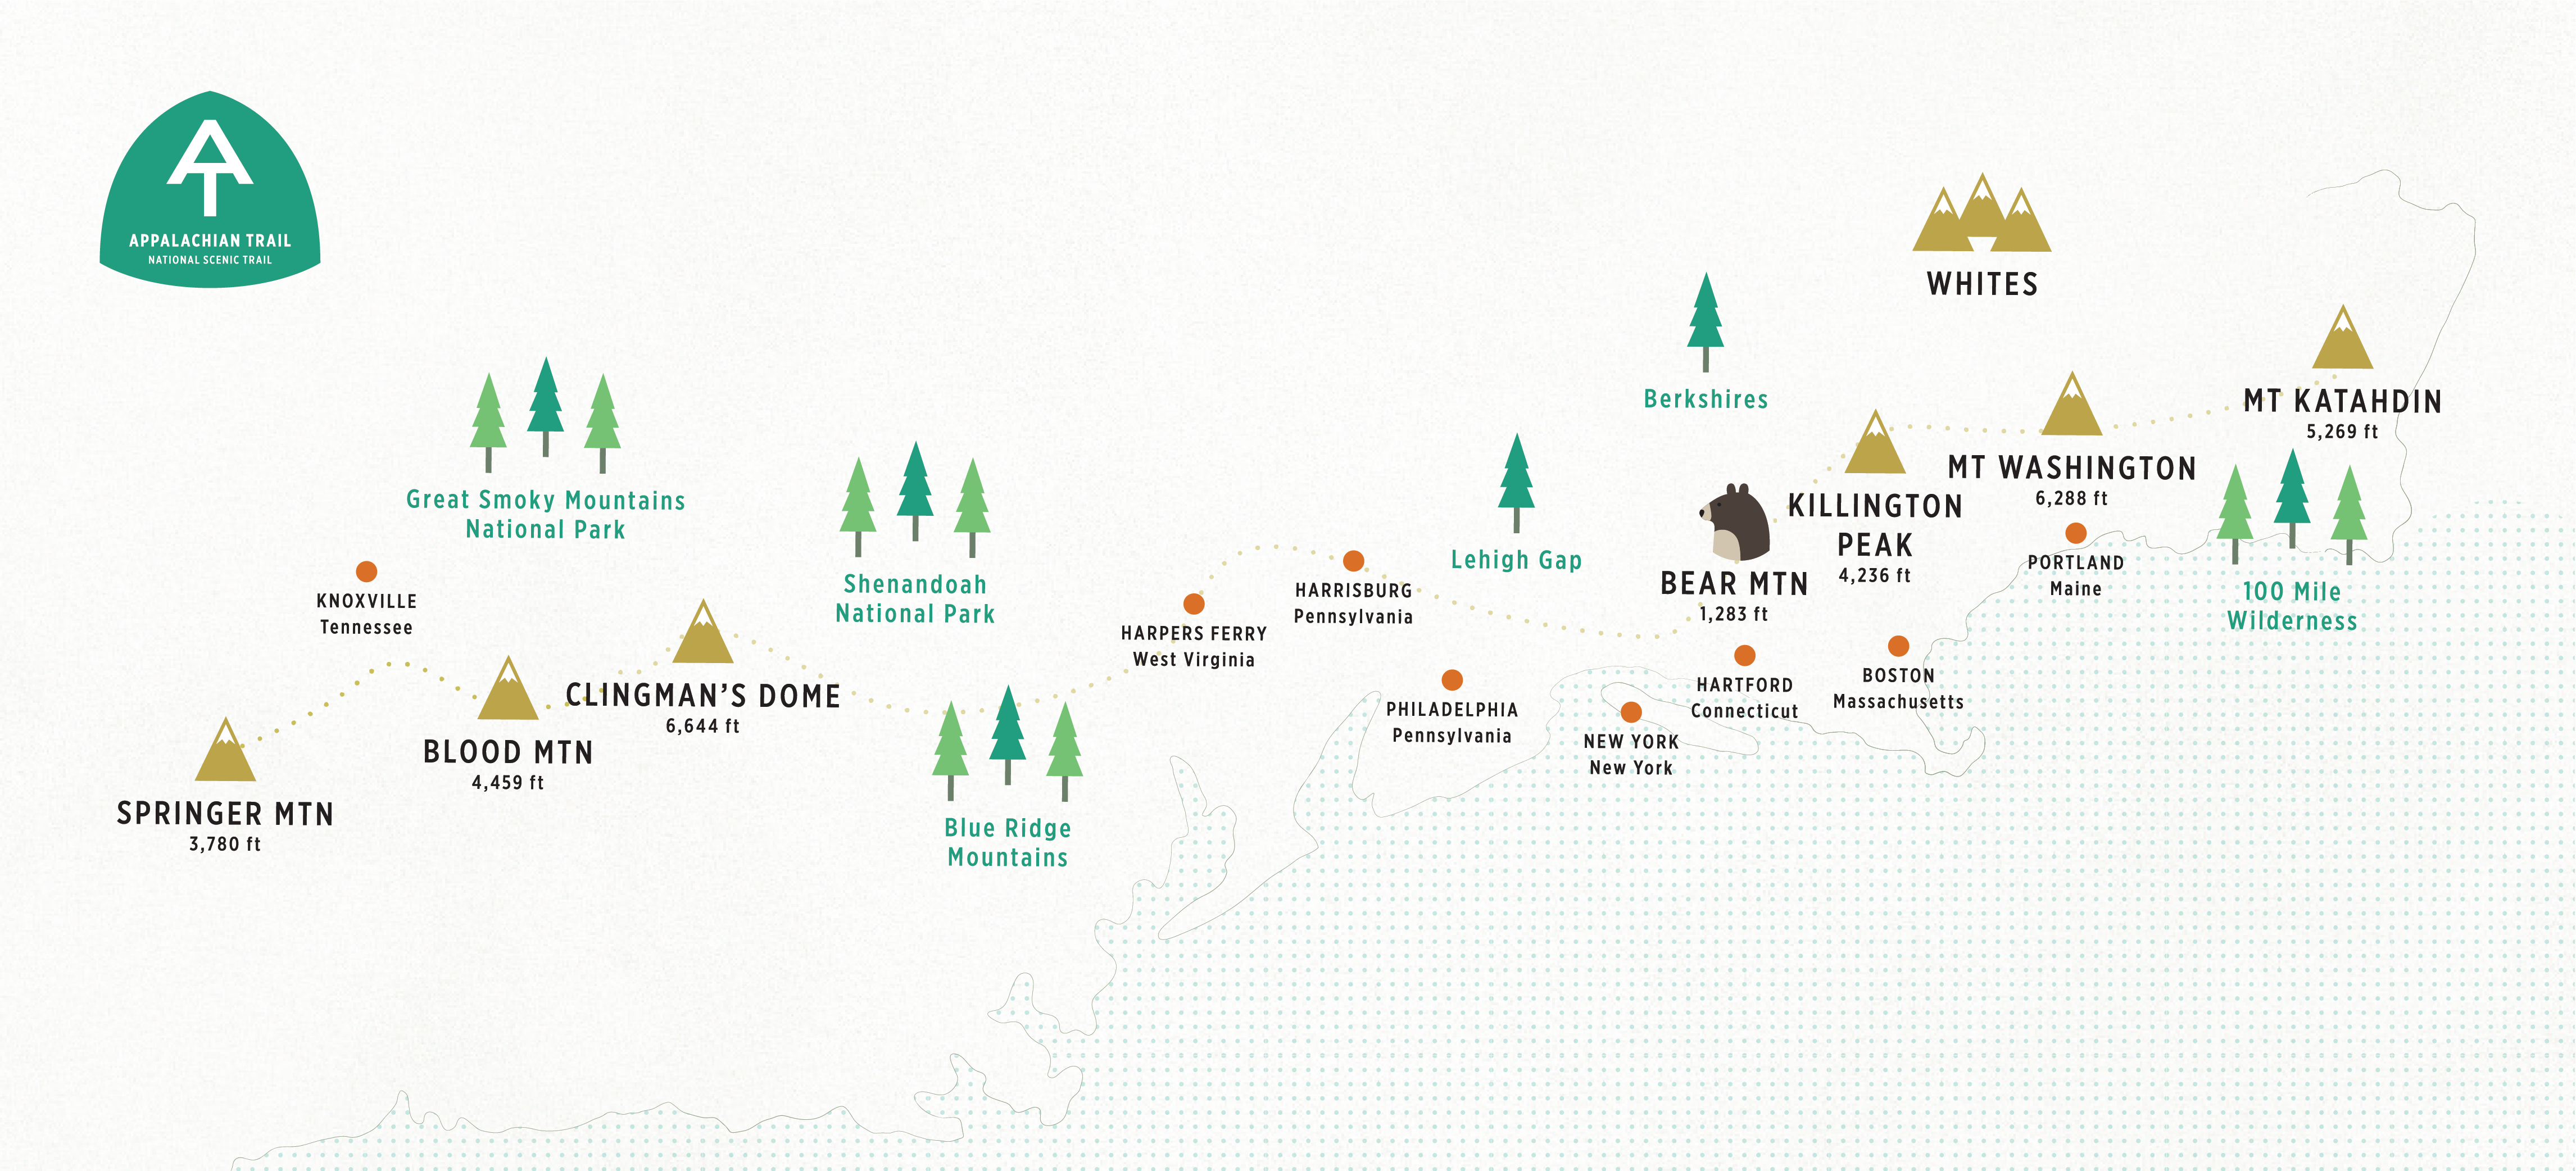 Appalachian Trail Illustrated Map - HikerFeed